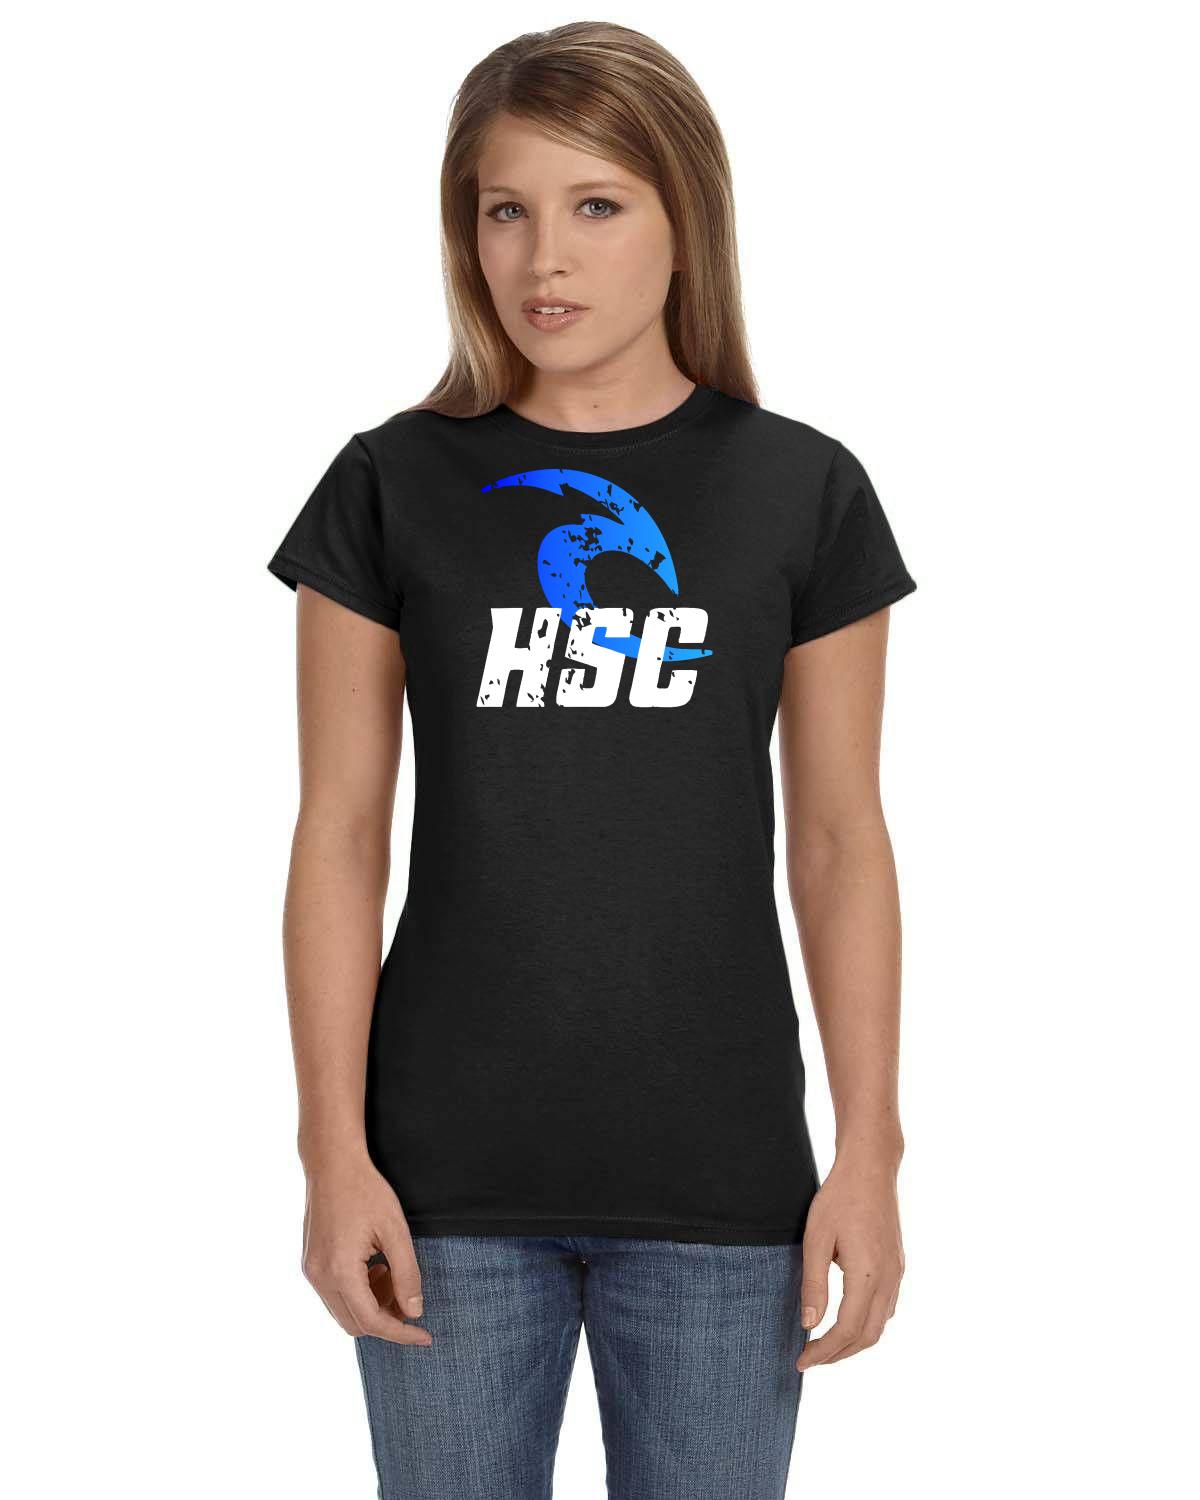 HSC Hanover Swim Club Coach Ladies TShirt